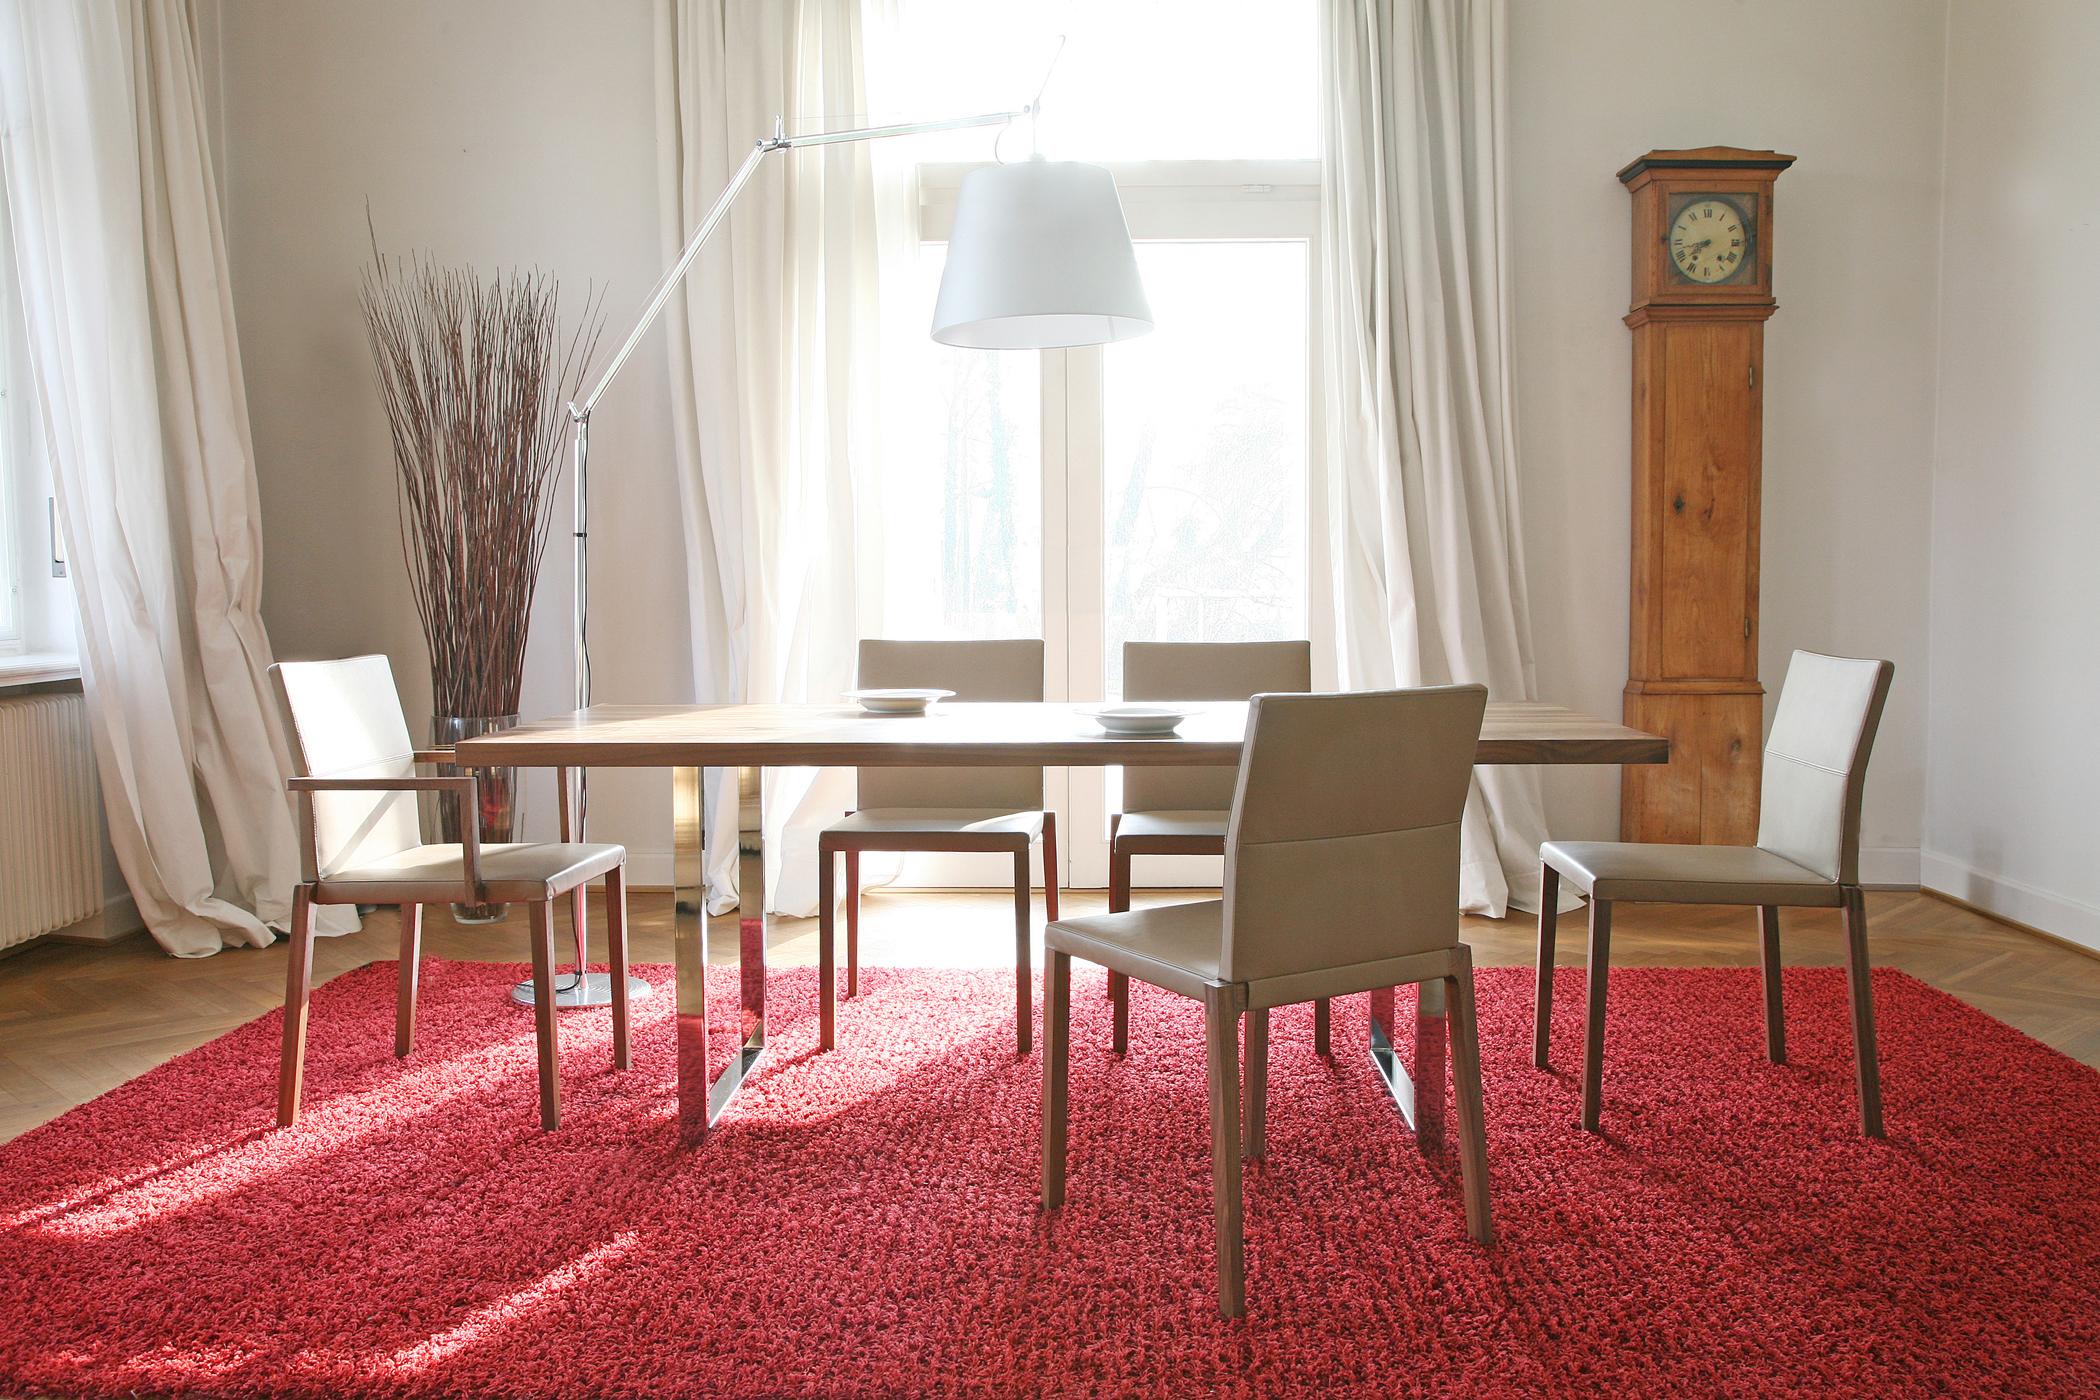 Roter Teppich im hellen Esszimmer #teppich #stehlampe #vorhang #tisch #standuhr ©KFF